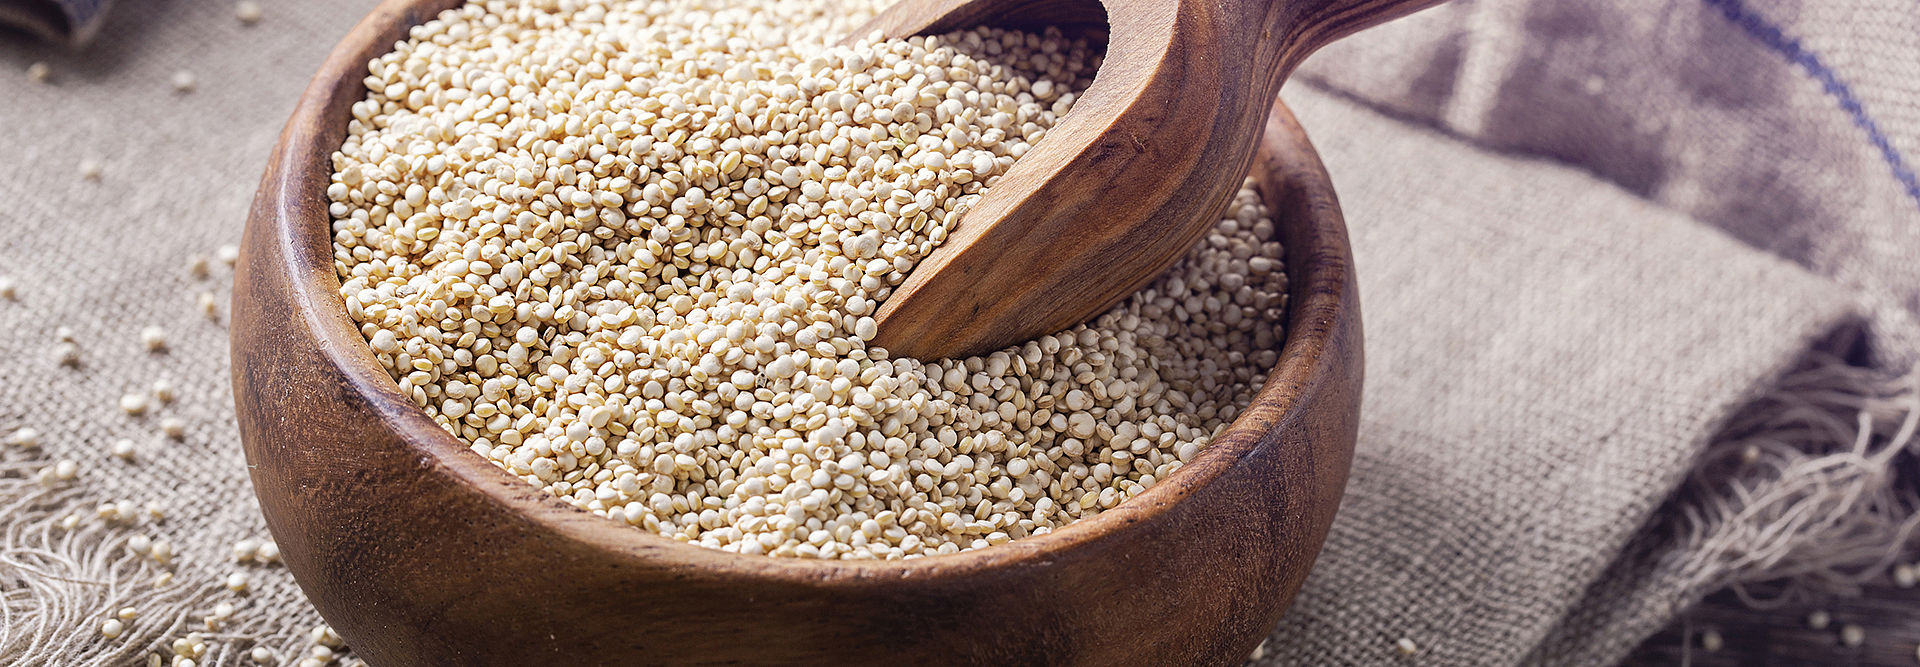 Installation de traitement de quinoa